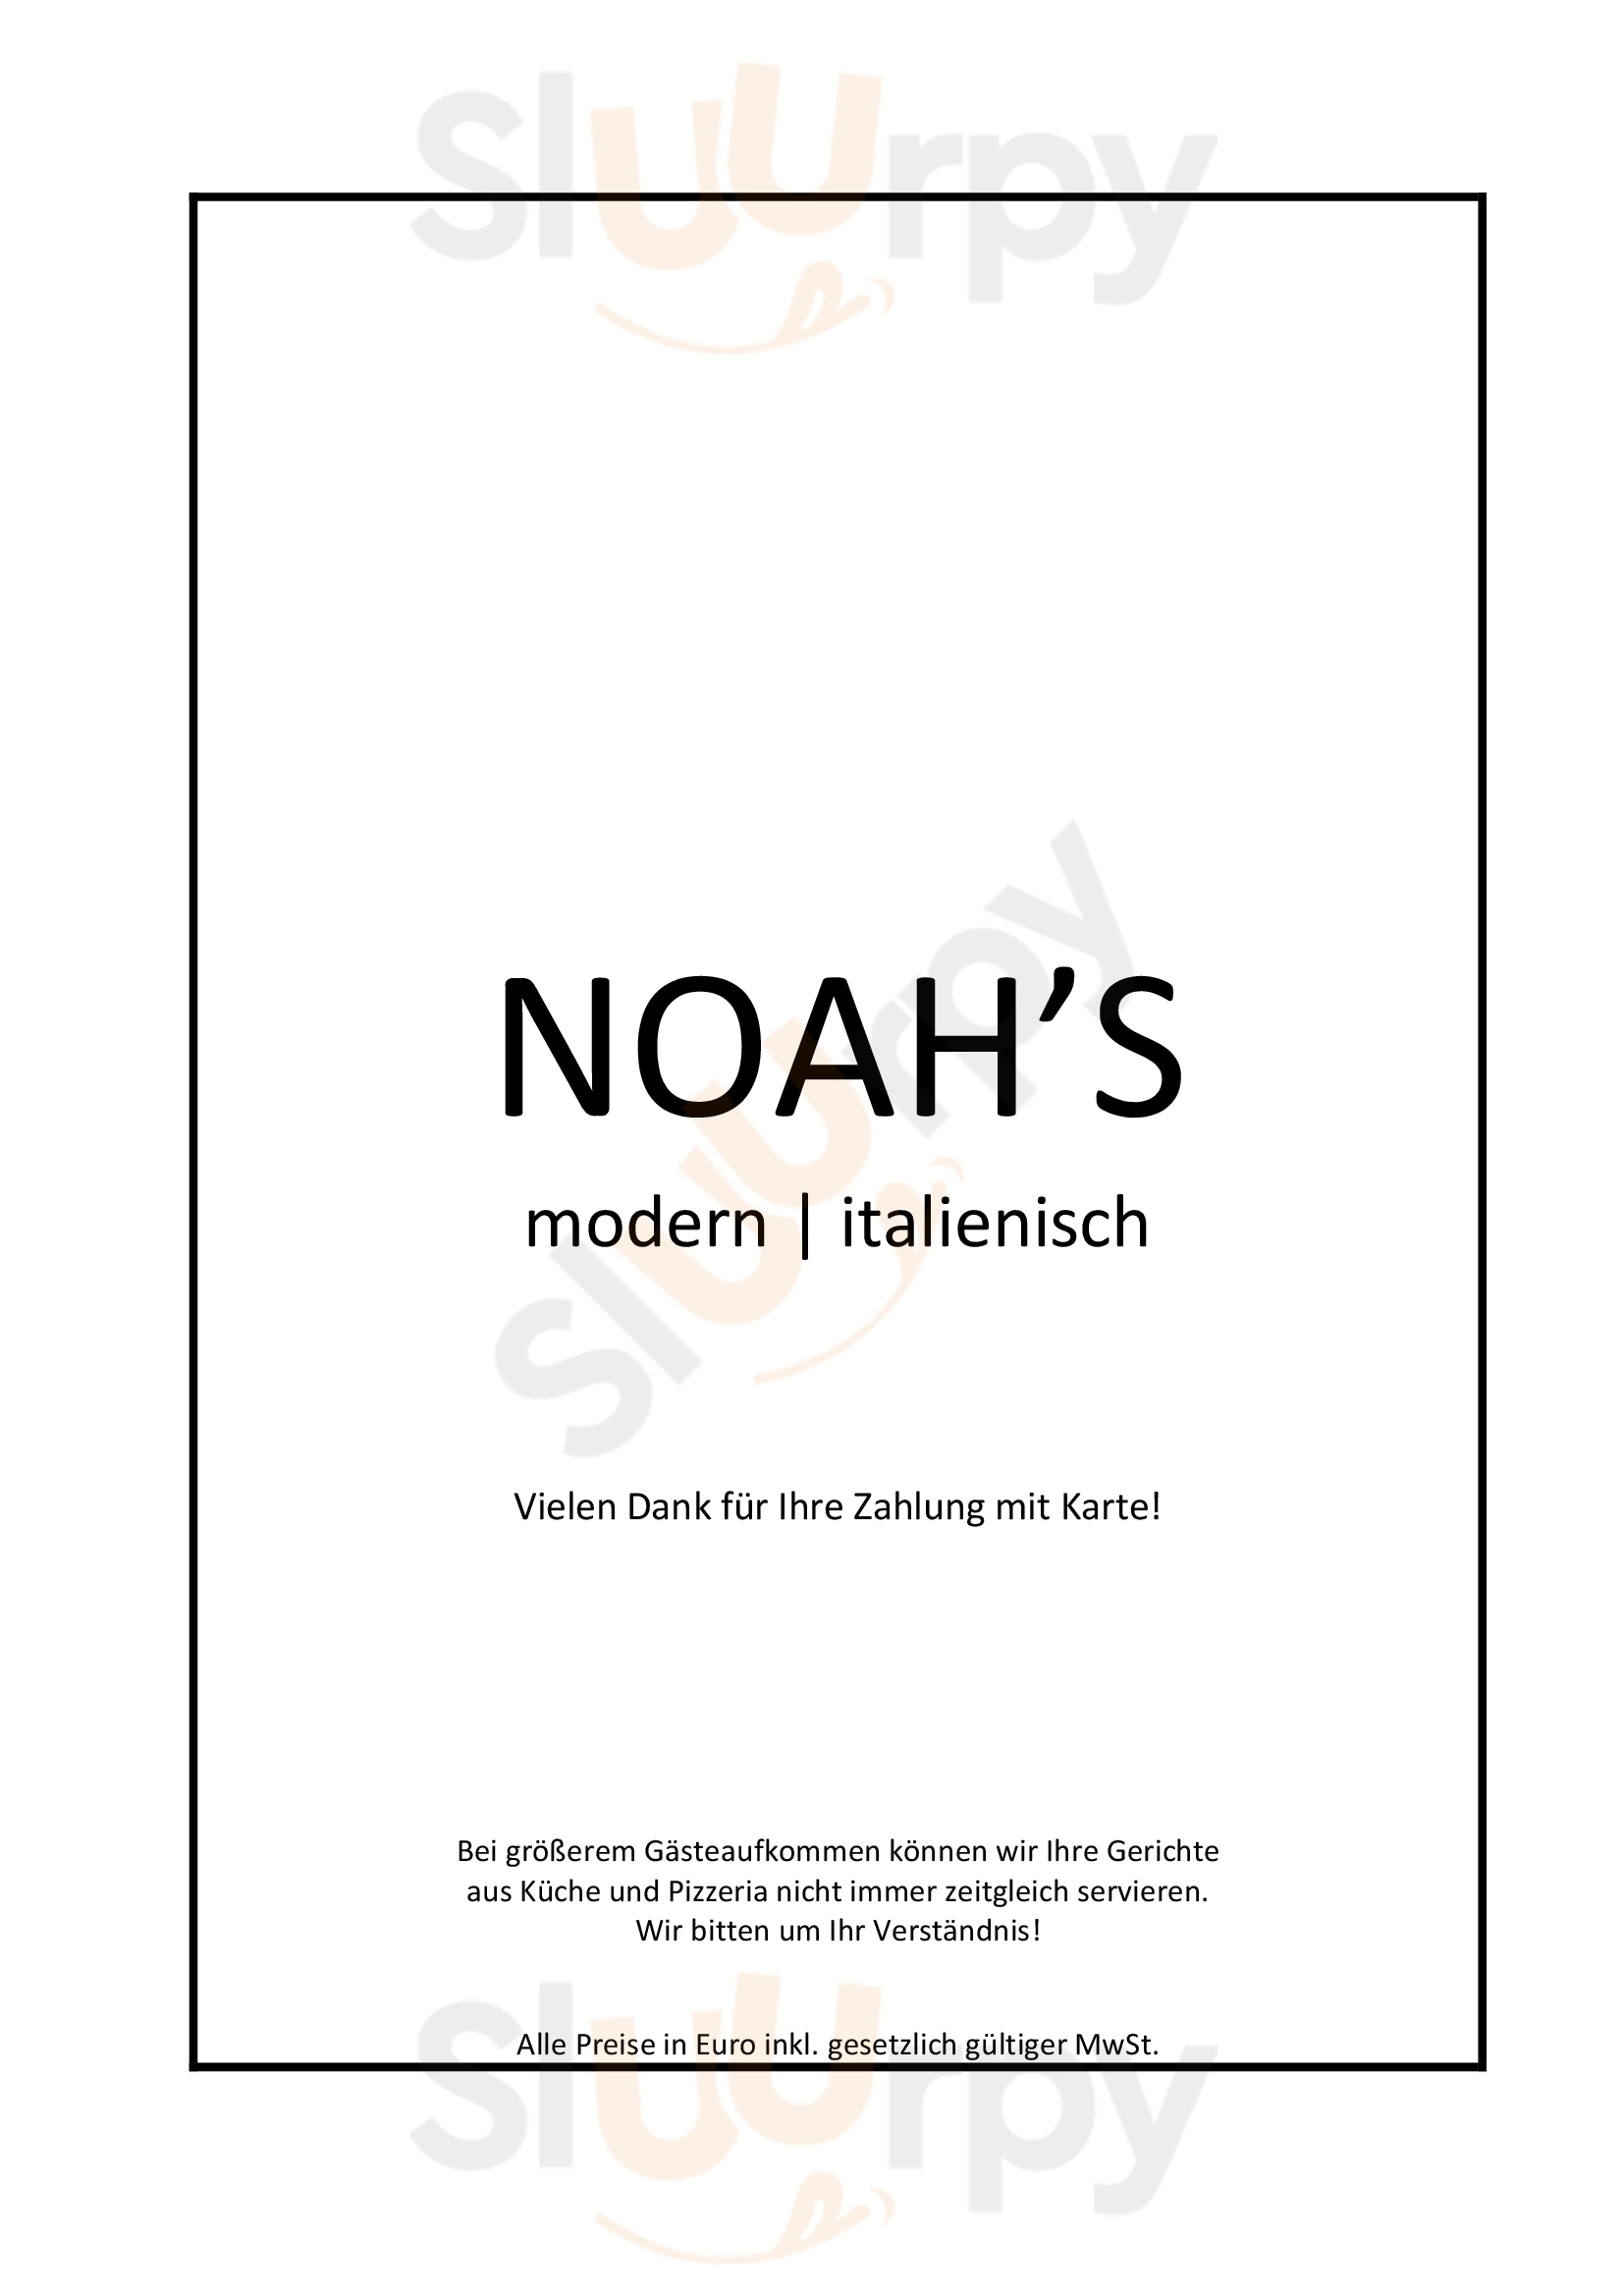 Noah's München Menu - 1